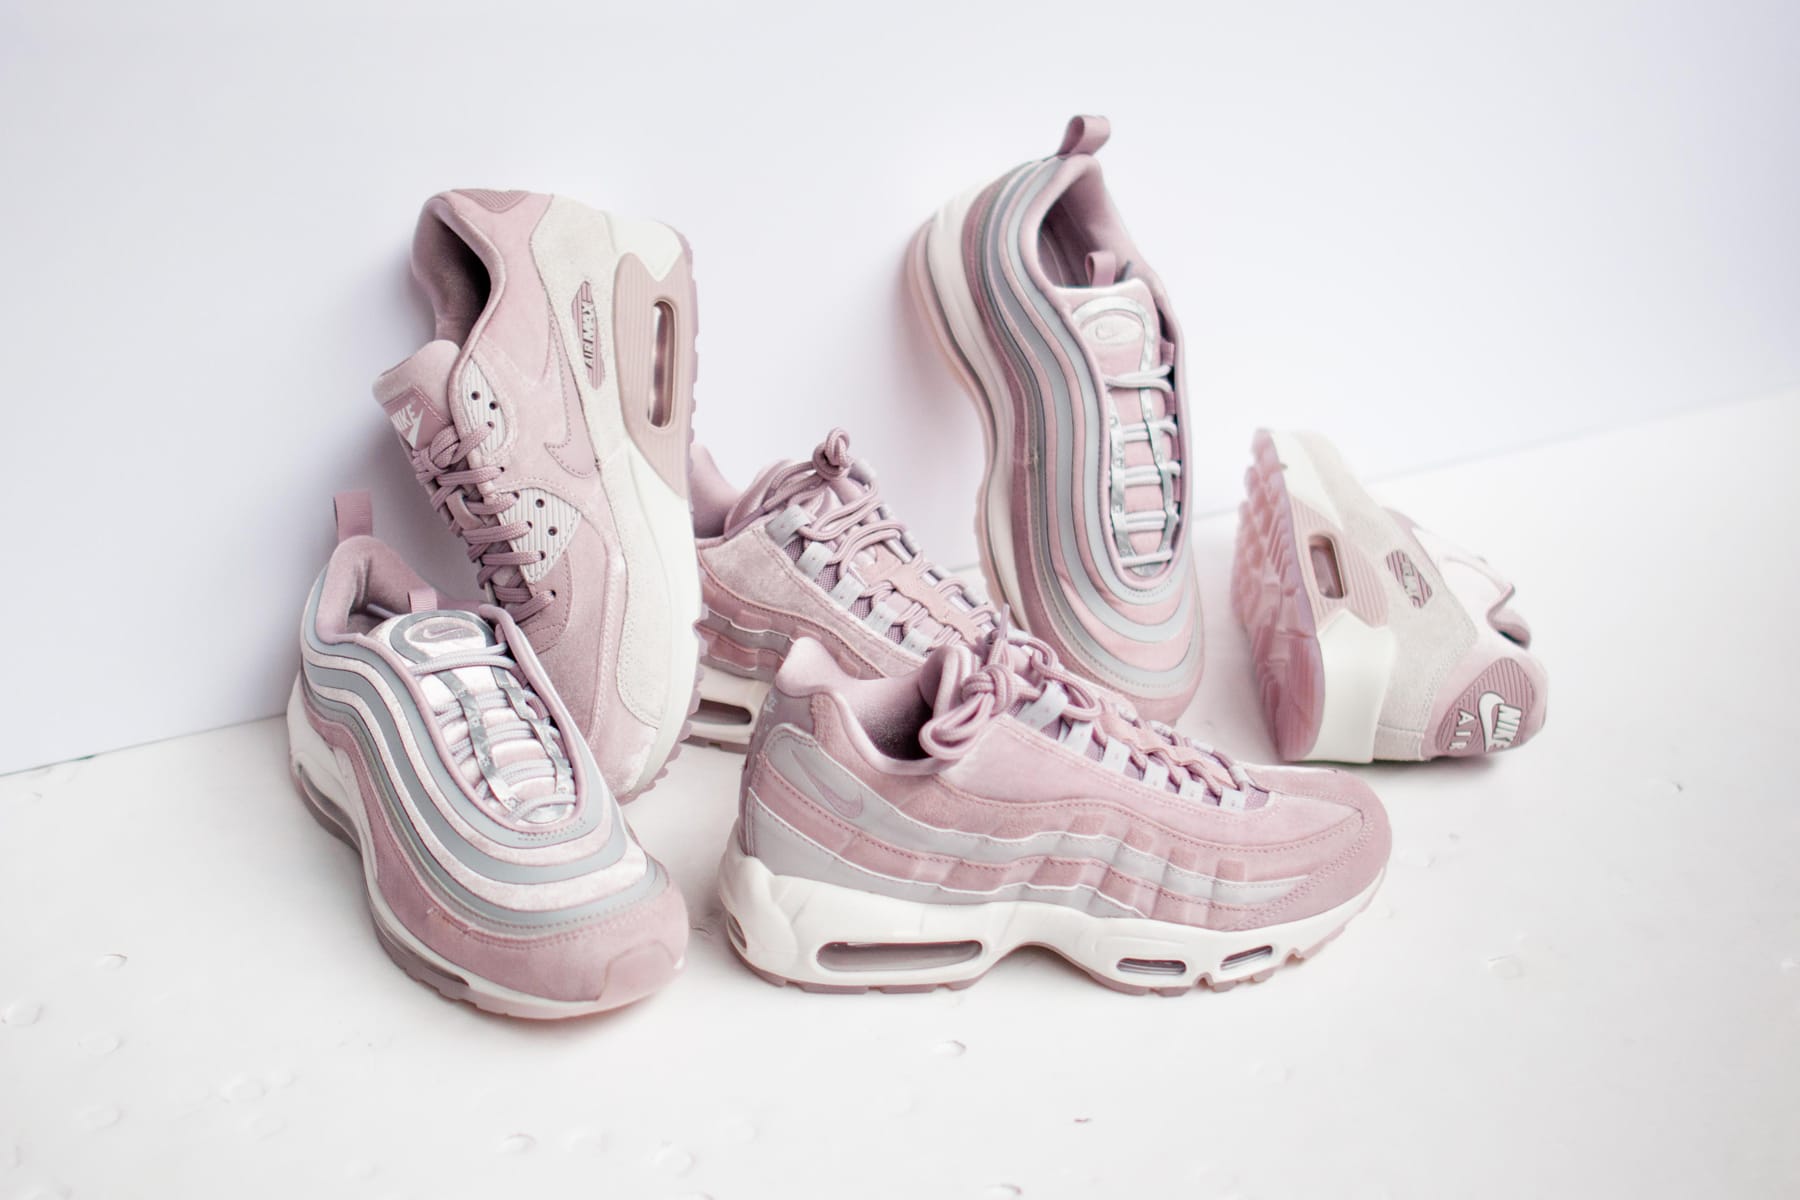 nike pink sneakers 2018